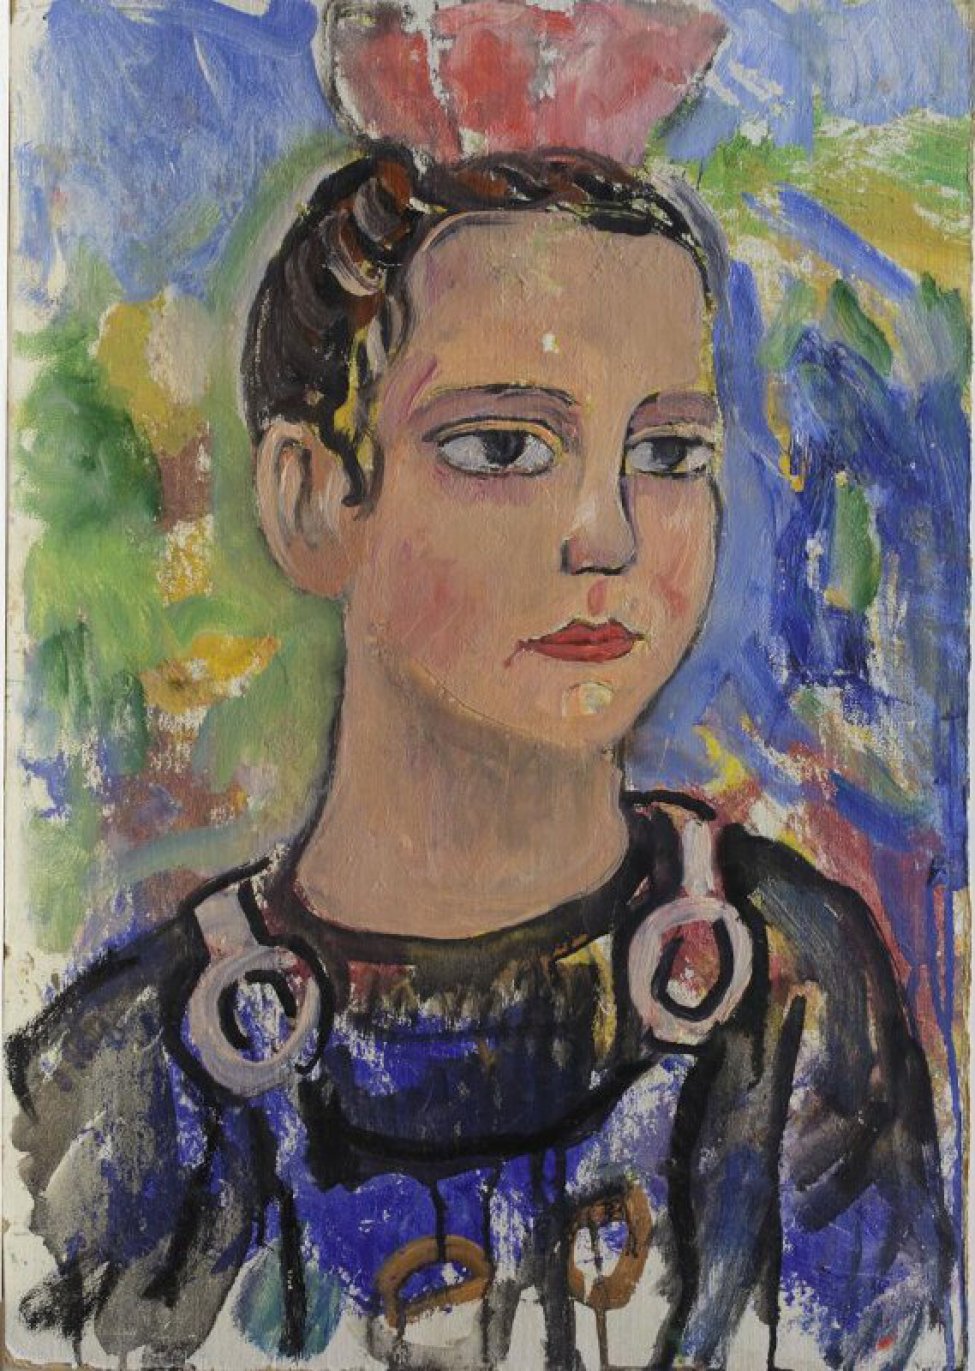 На цветном фоне (синий, желтый, зеленый) - погрудное изображение девушки с черными волосами, в черно-синей одежде с крупными кольцами-пряжками. Голова в повороте влево. На голове розовое украшение (?).